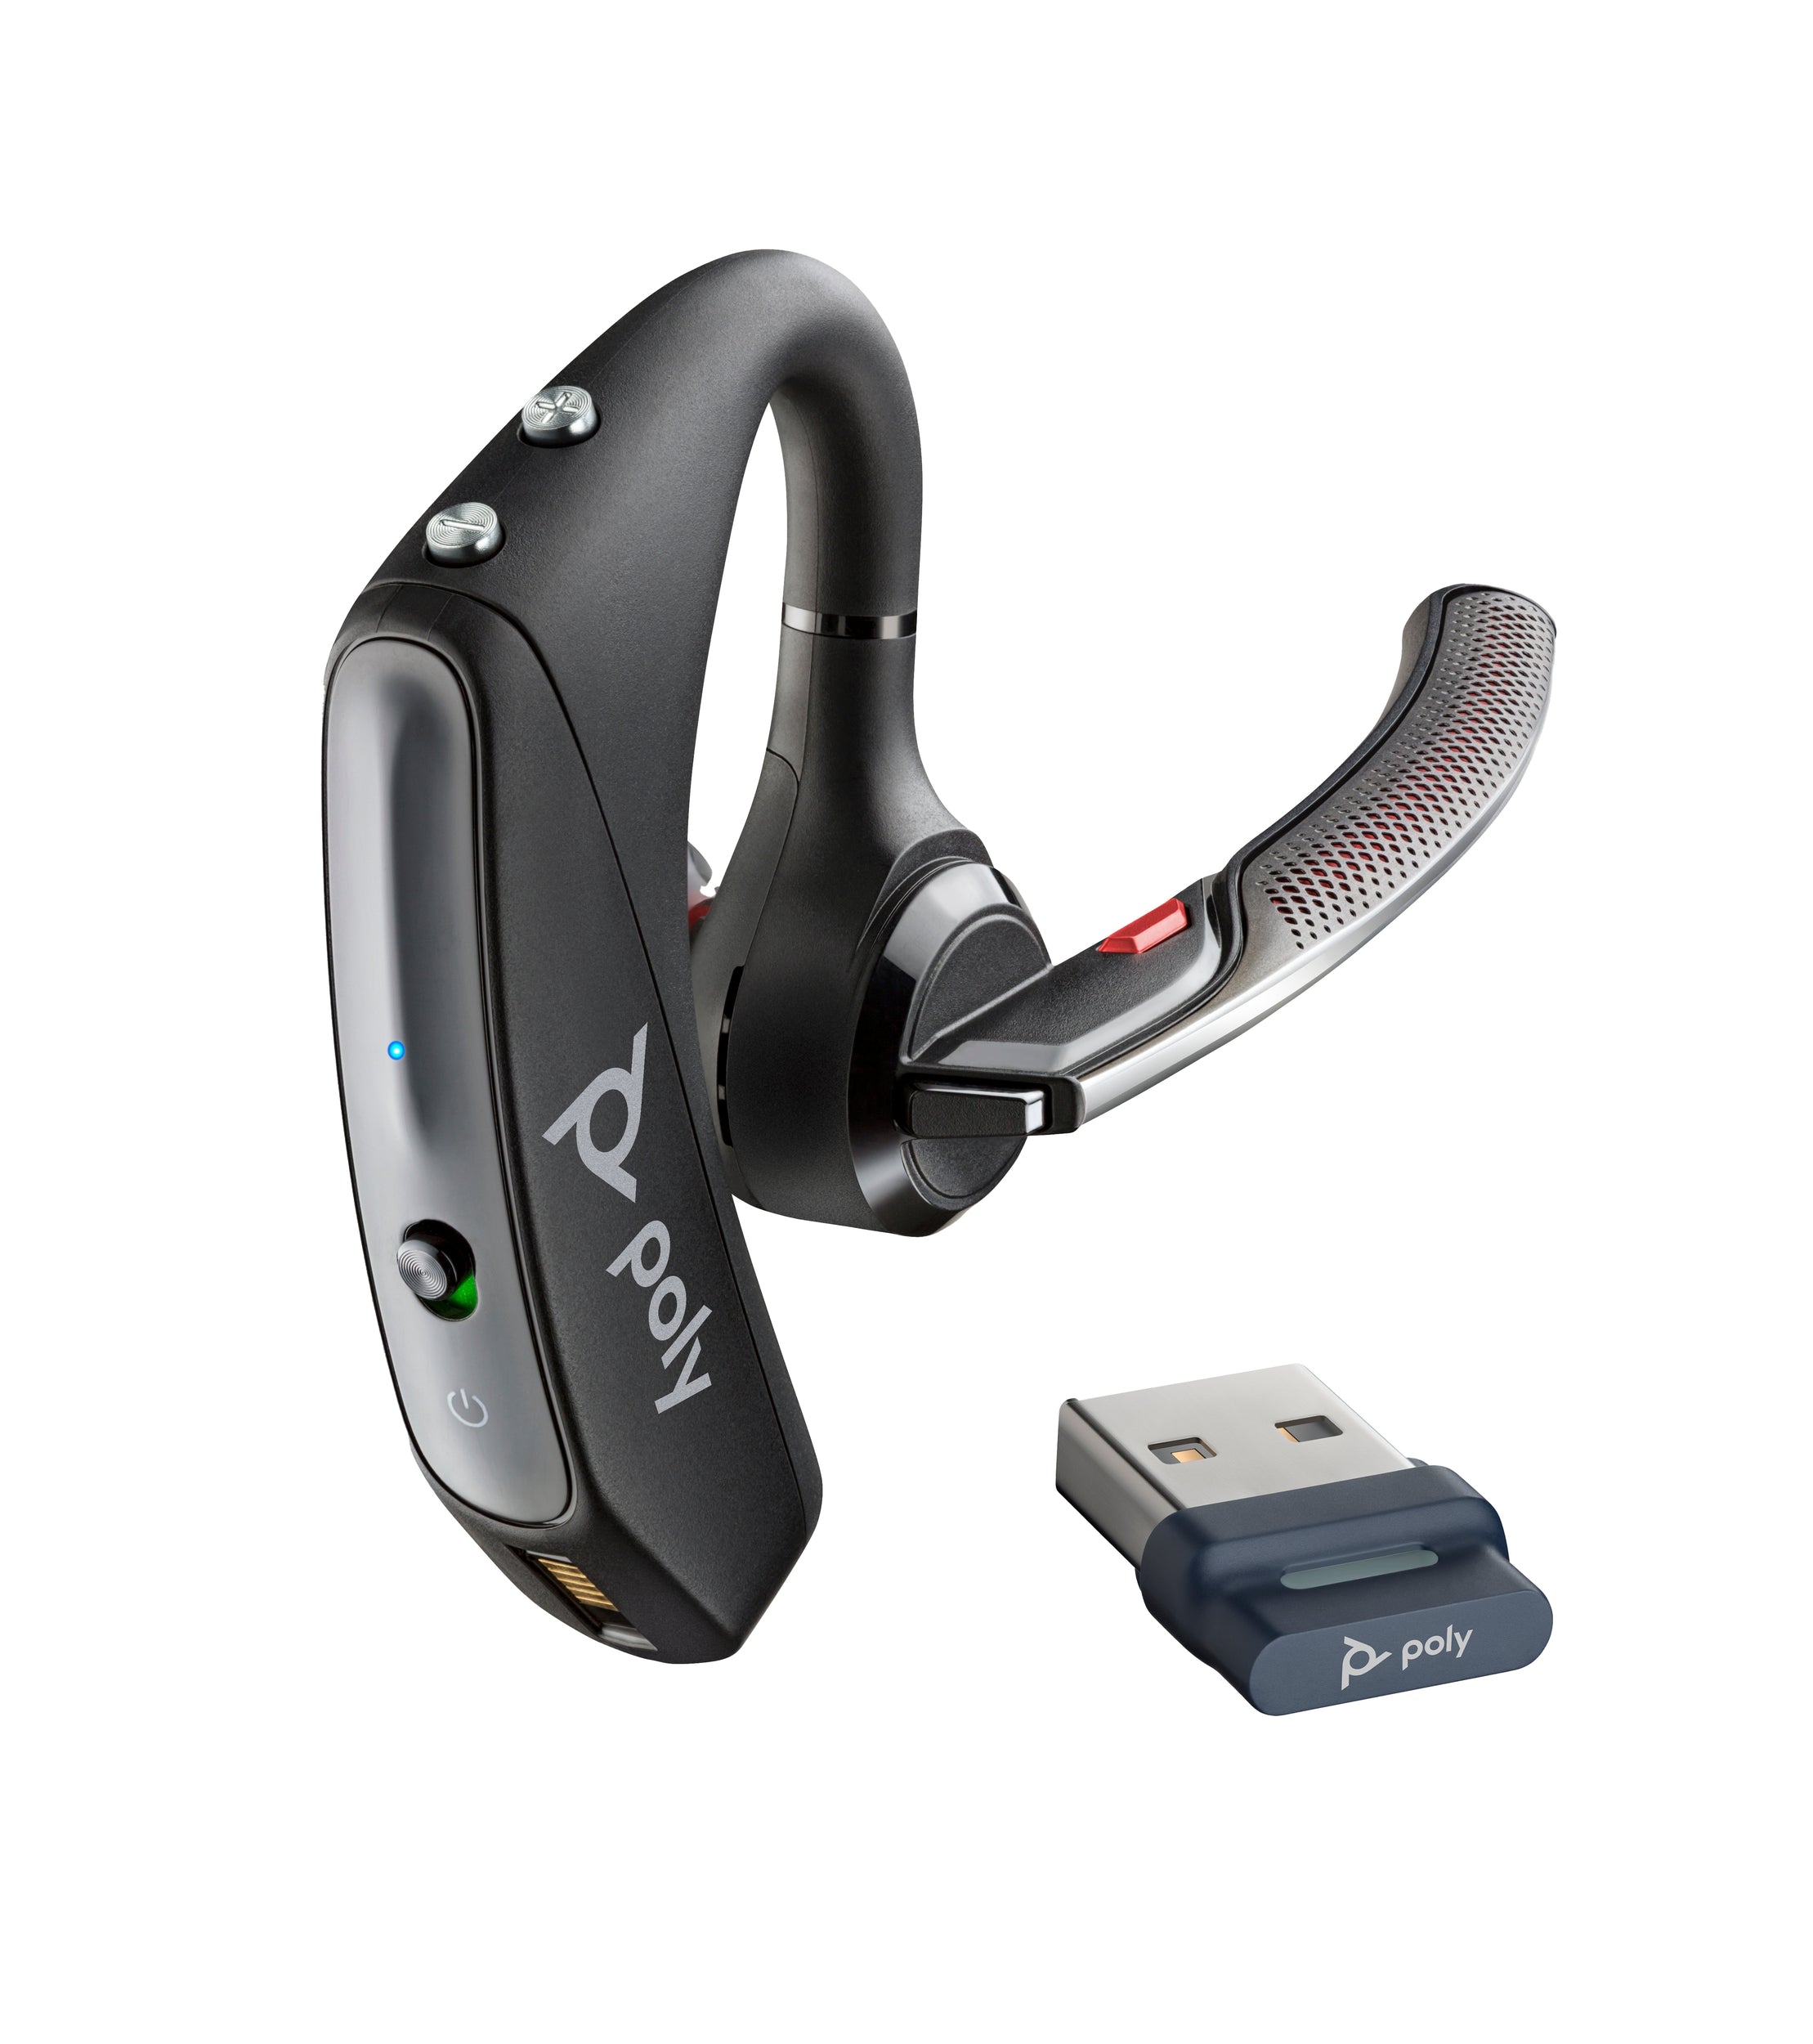 Auricular Plantronics Voyager 5200 Uc Poly Bluetooth Para Moviles Y Computadoras Incluye Estuche De Carga Adaptador